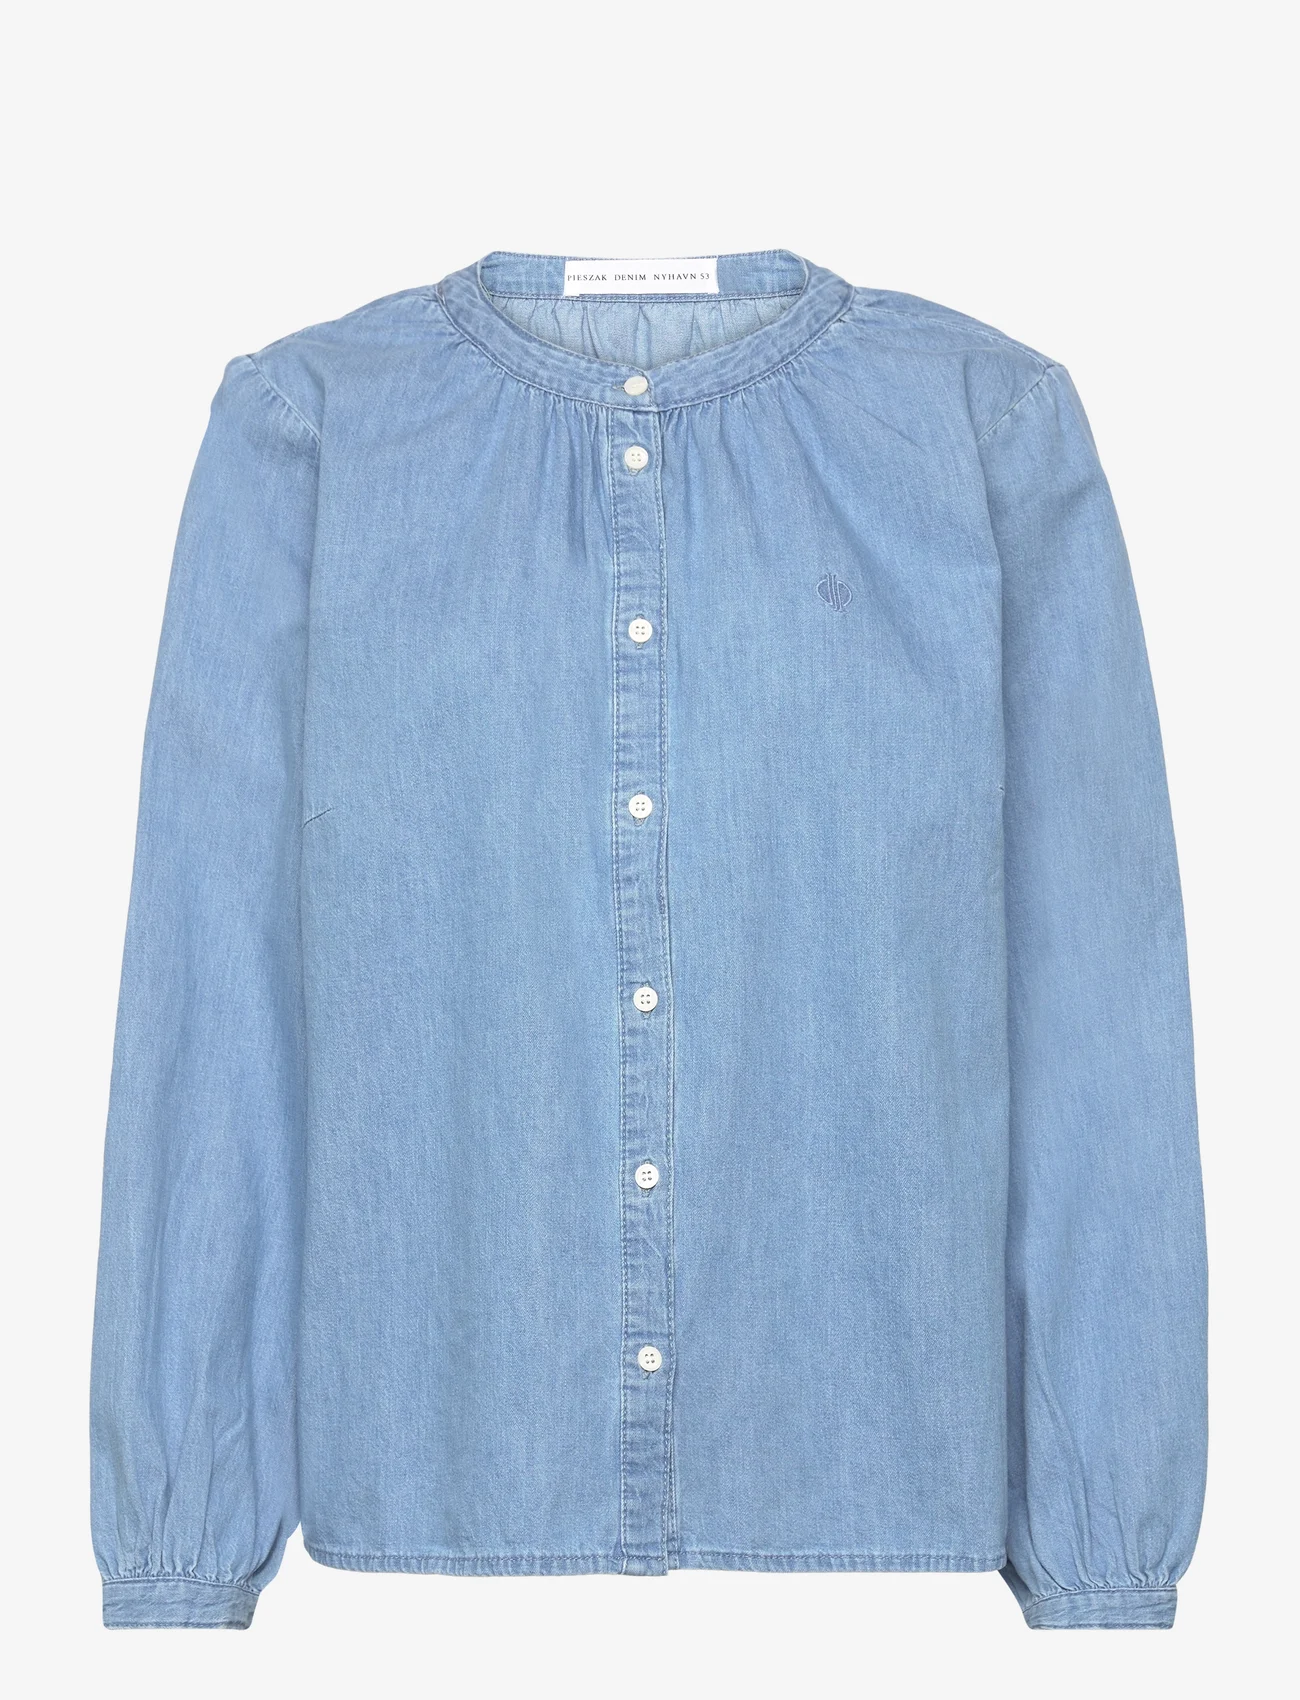 Pieszak - PD-Luna Denim Shirt - jeansskjortor - denim blue - 0